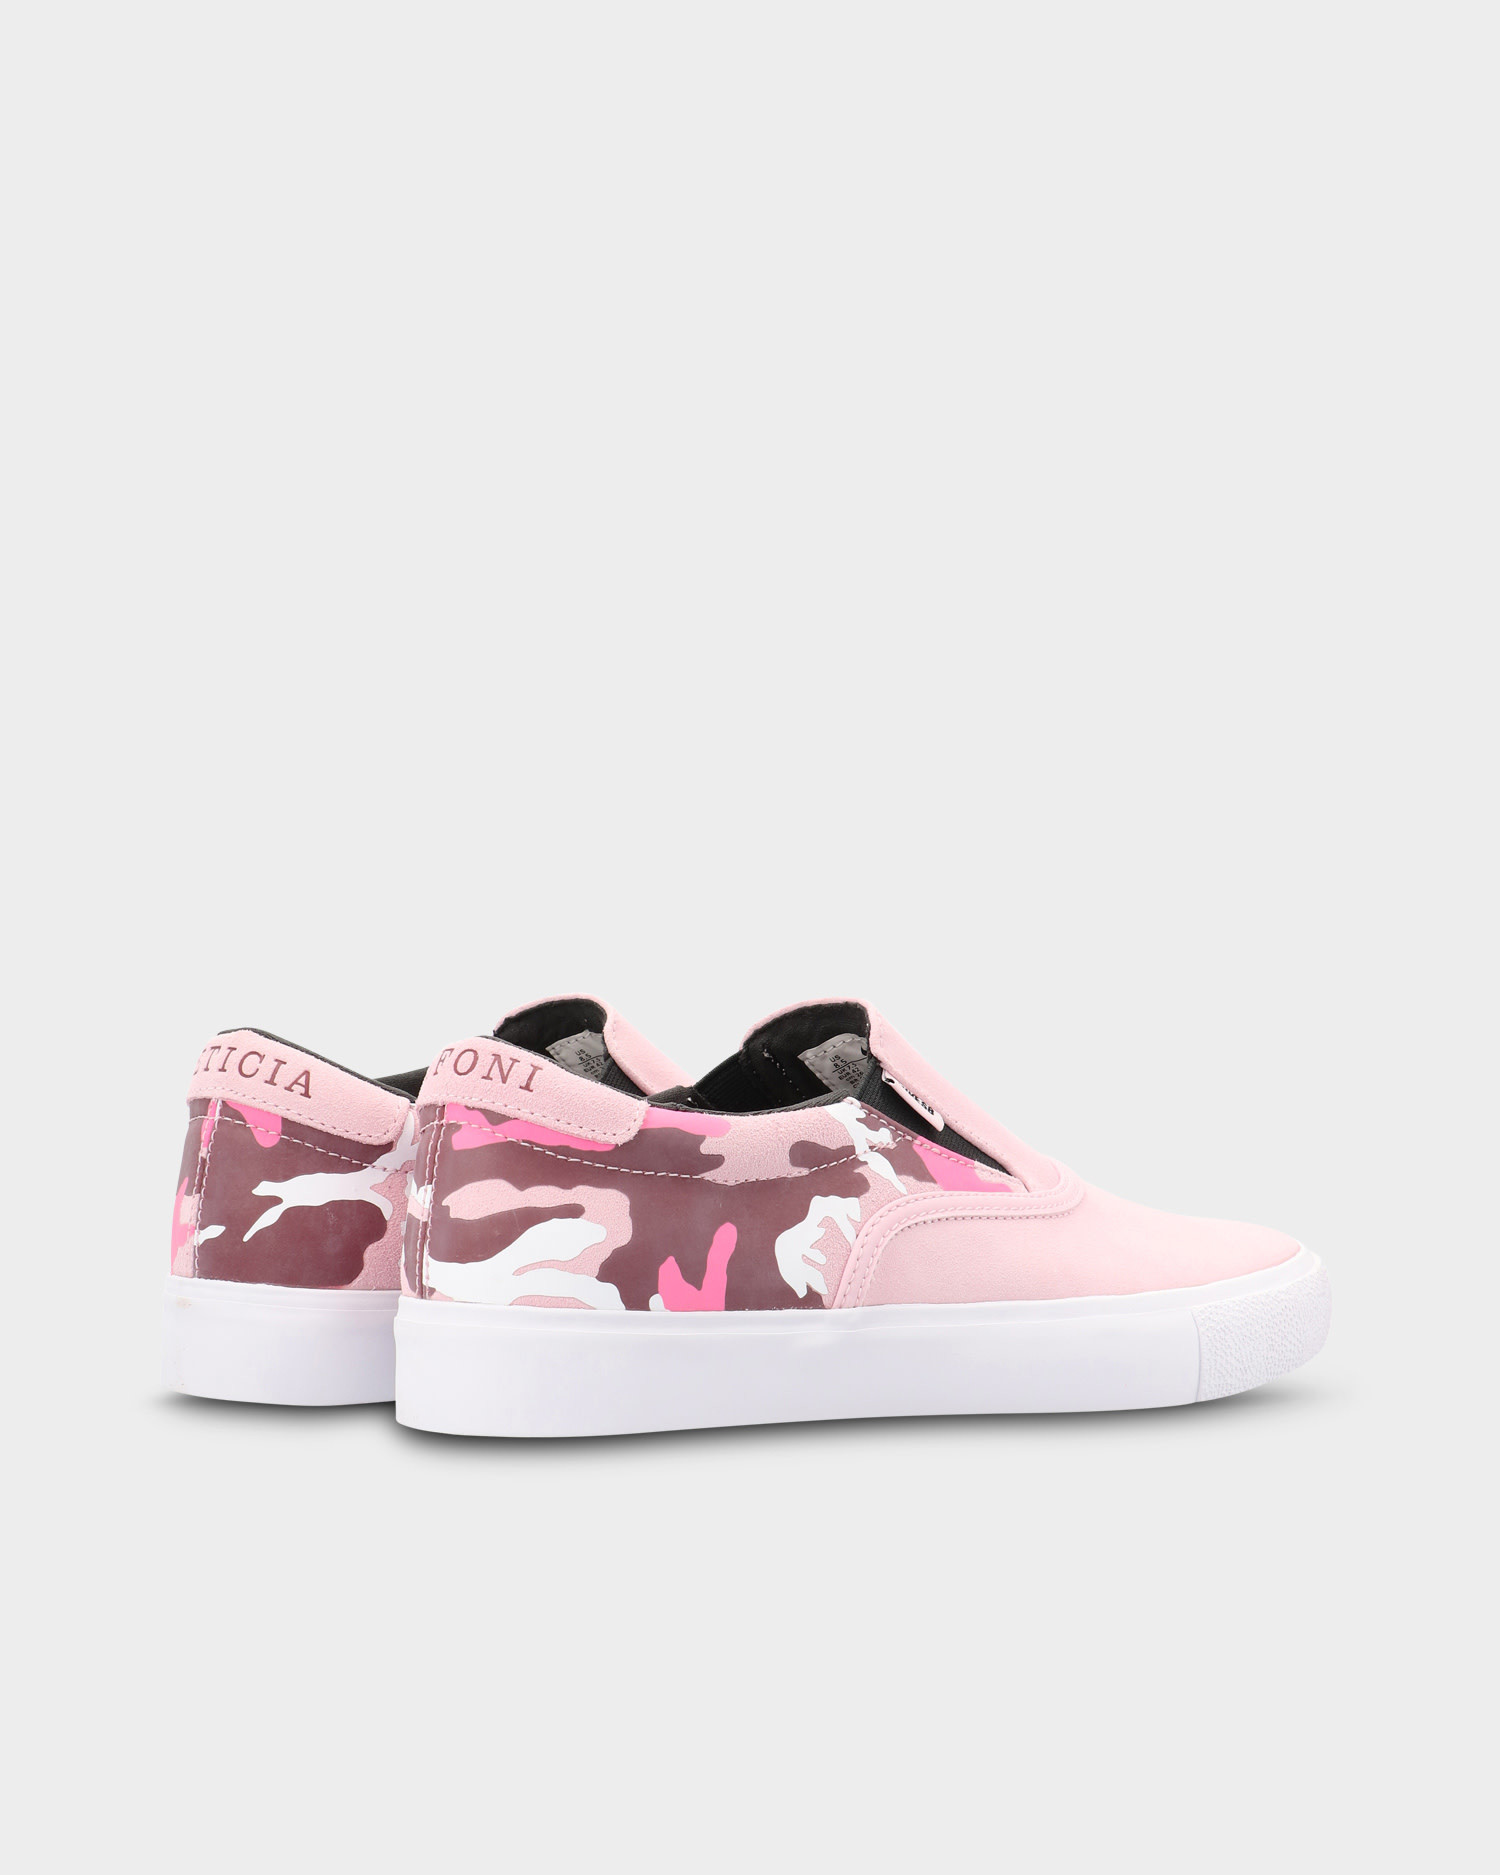 Nike SB Zoom Verona Slip Leticia Bufoni Prism Pink